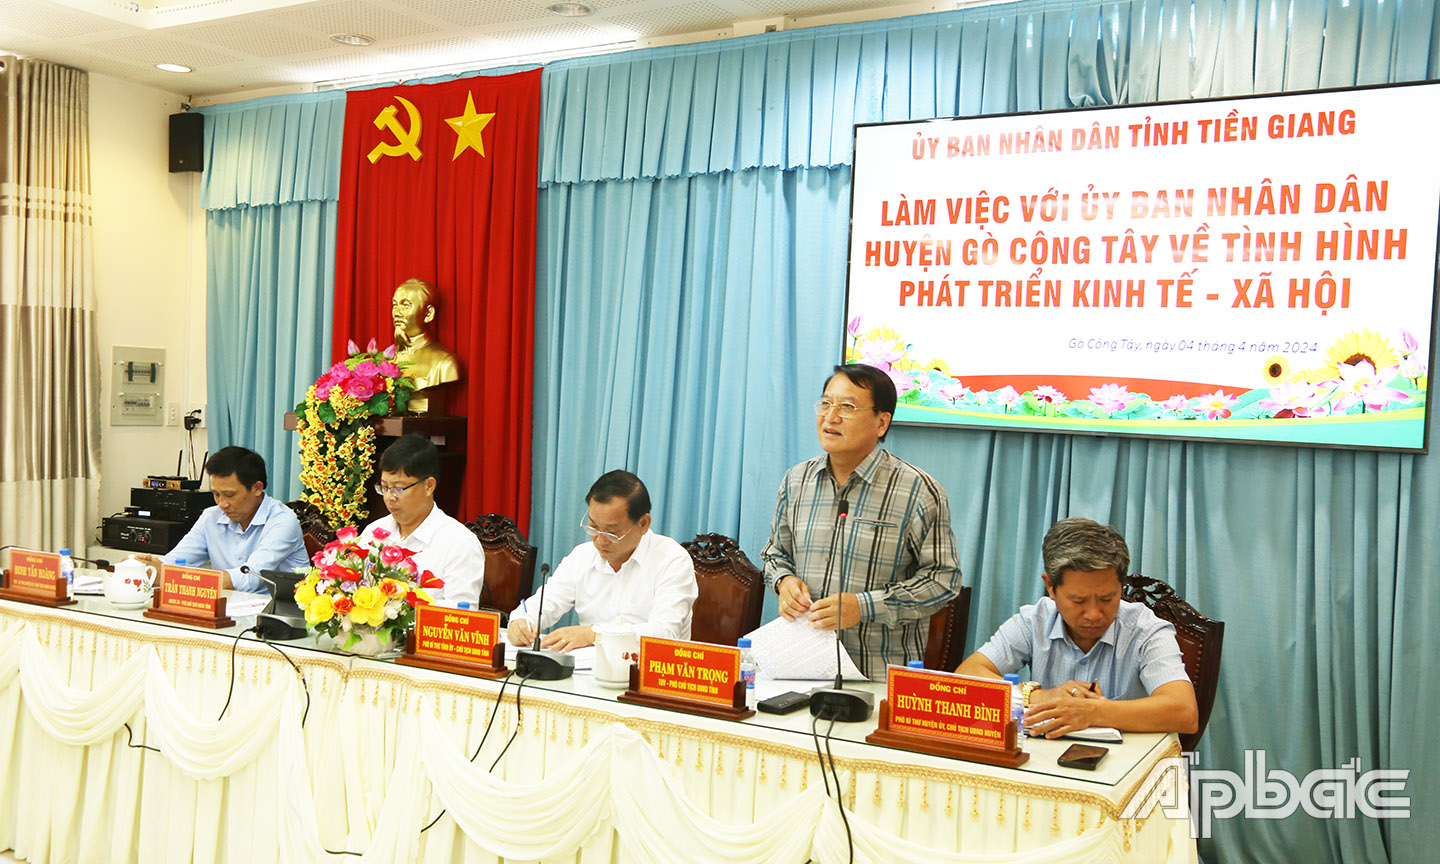 Đồng chí Phạm Văn Trọng phát biểu tại buổi làm việc